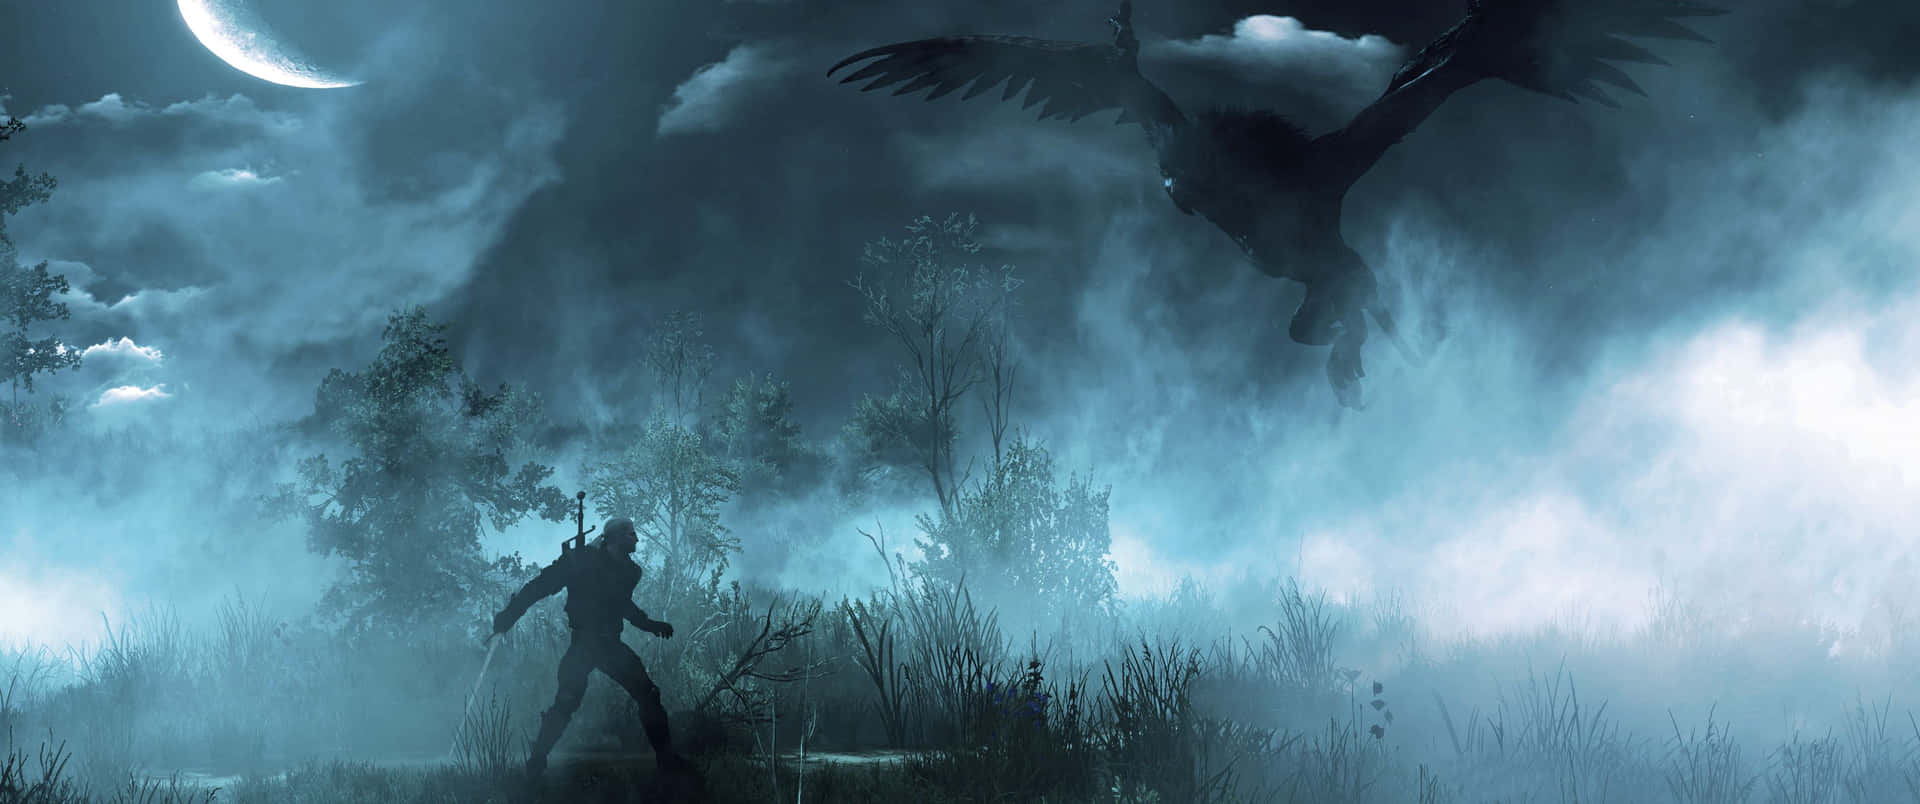 En episk kamp mellem Geralt of Rivia og en usynlig fjende. Wallpaper